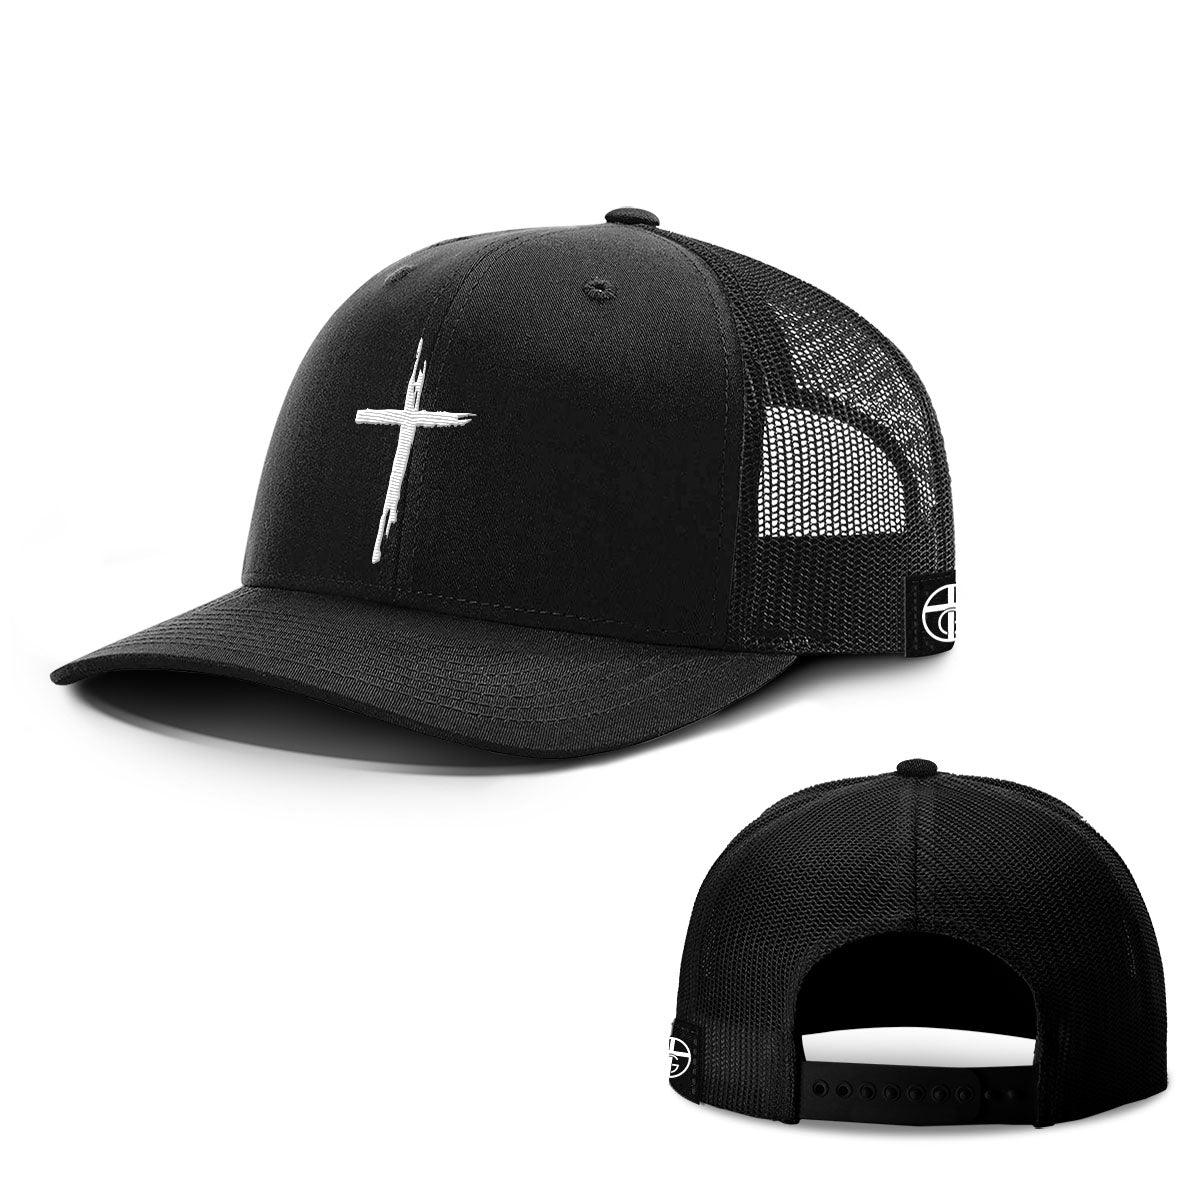 Cross Center Hats - Our True God